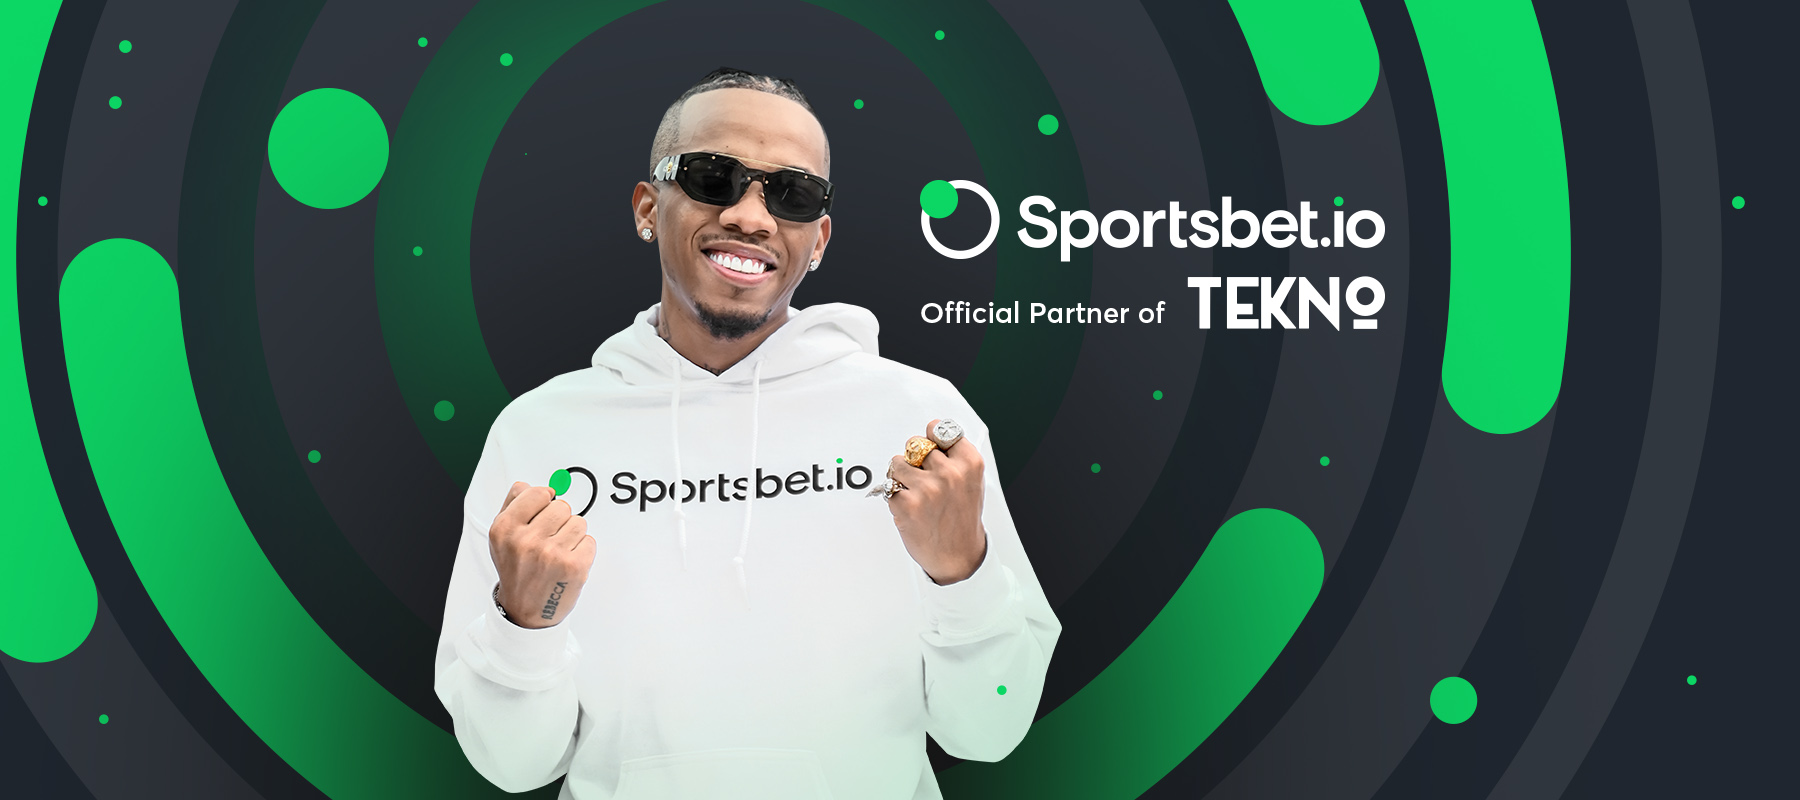 O Sportsbet.io revela a mais recente novidade: Tekno Miles como embaixador global da marca